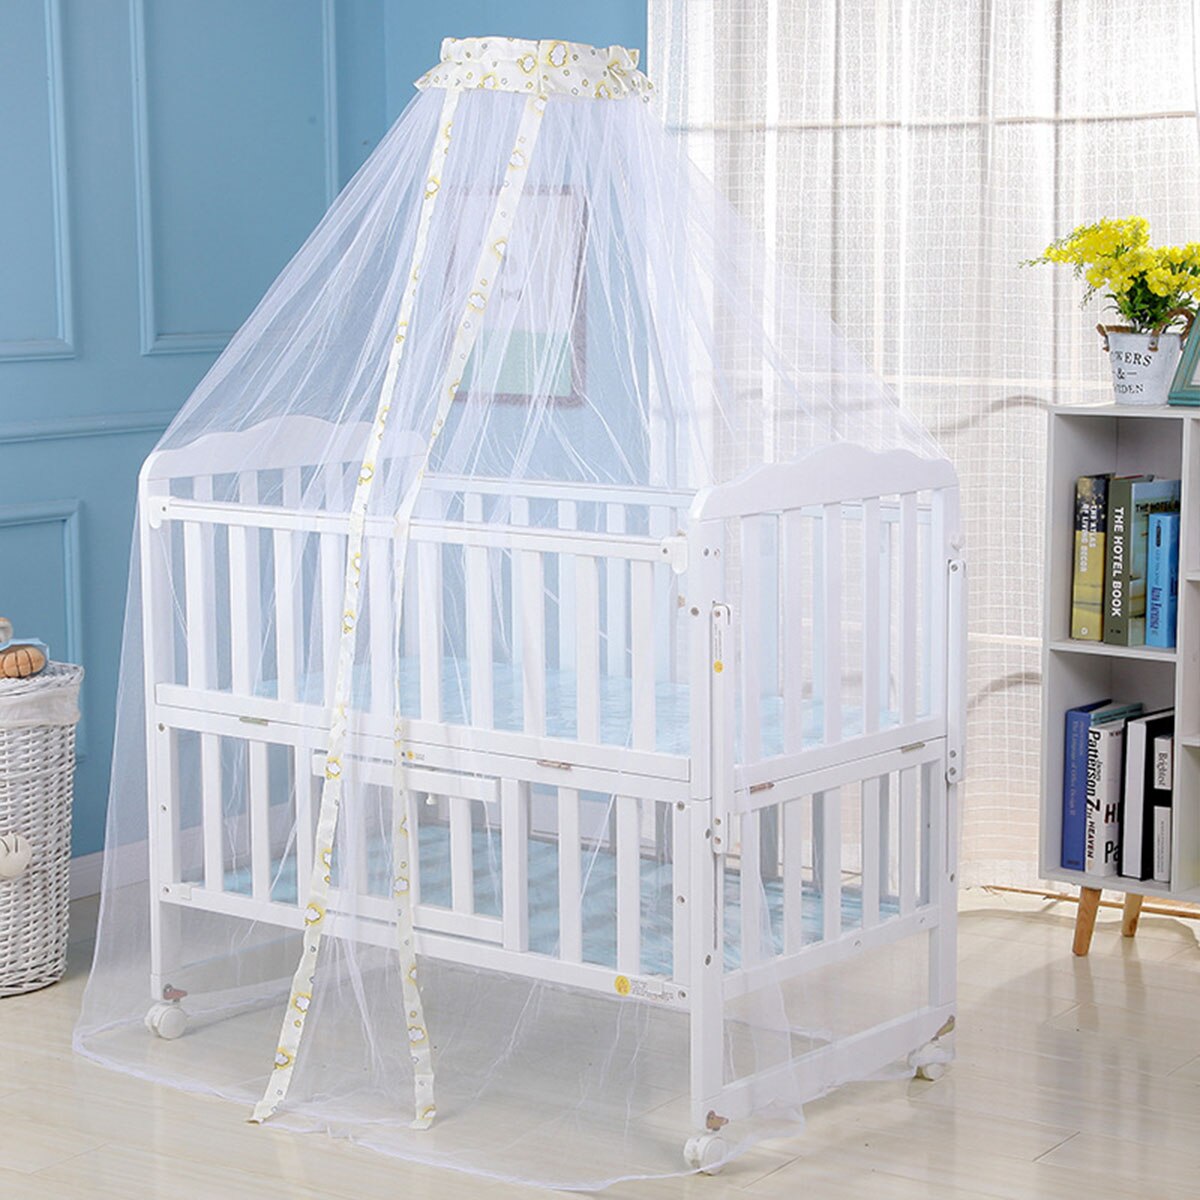 1 * Klamboe Baby Bed Klamboe Mesh Dome Gordijn Netto Voor Peuter Crib Cot Luifel blauw Roze Geel Kleur